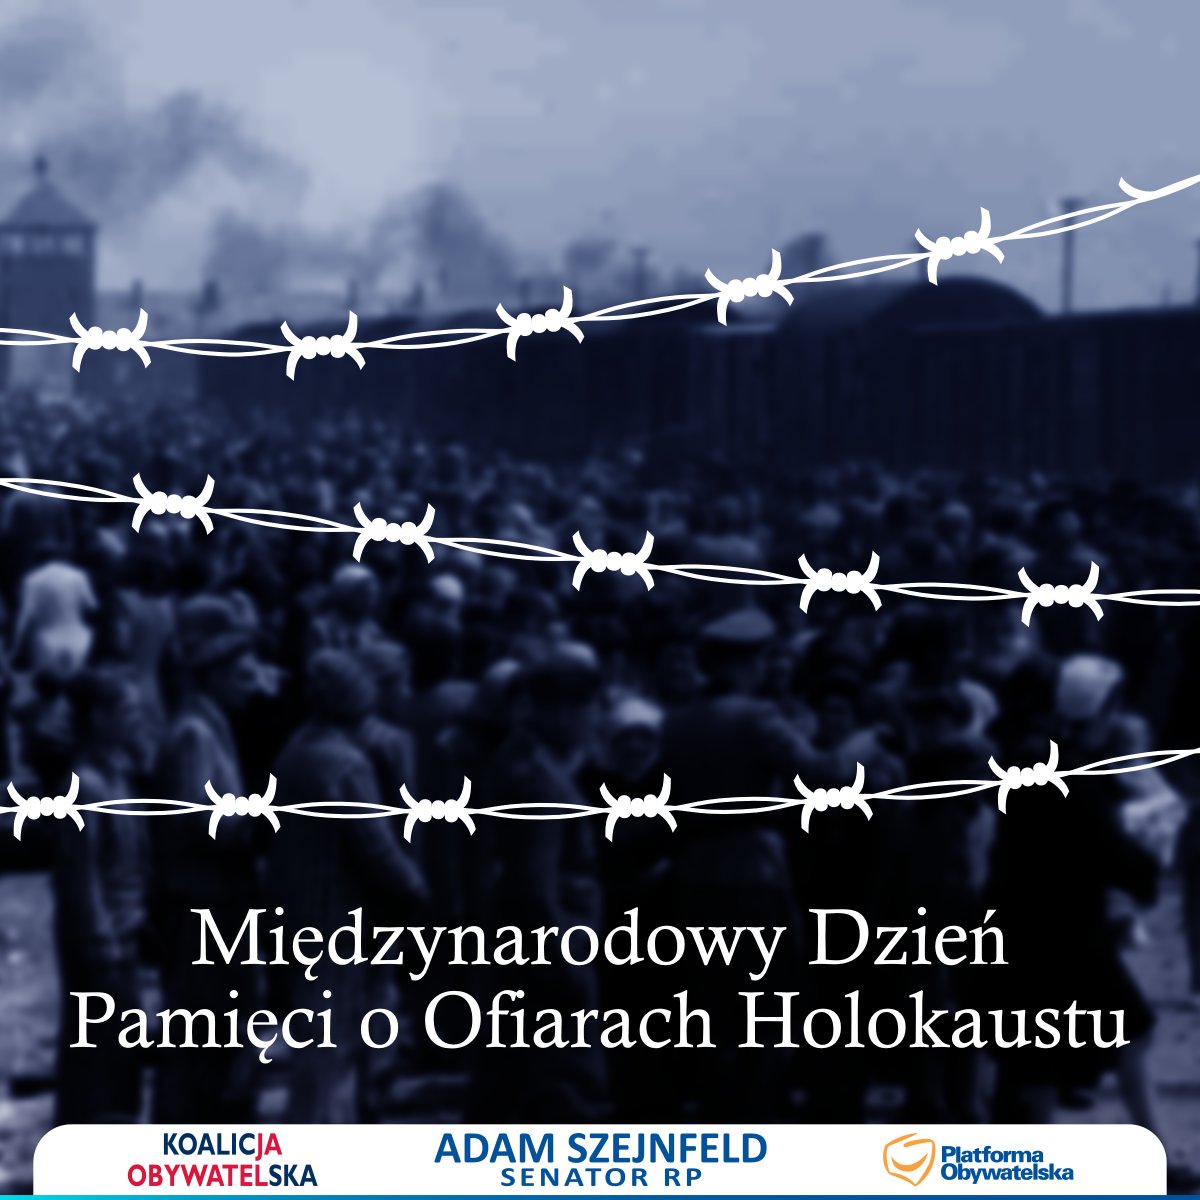 Wymordowano ok. 6 milionów Żydów, w tym 2 miliony dzieci! Połowa pochodzenia polskiego. I pomyśleć, że dzisiaj, w obliczu wiedzy o tym i pamięci, antysemityzm nadal jest żywy!

#Holocaust #HMD2023 #HolocaustRemembrance #HolocaustMemorialDay #Auschwitz #Pamiętamy #Holokaust